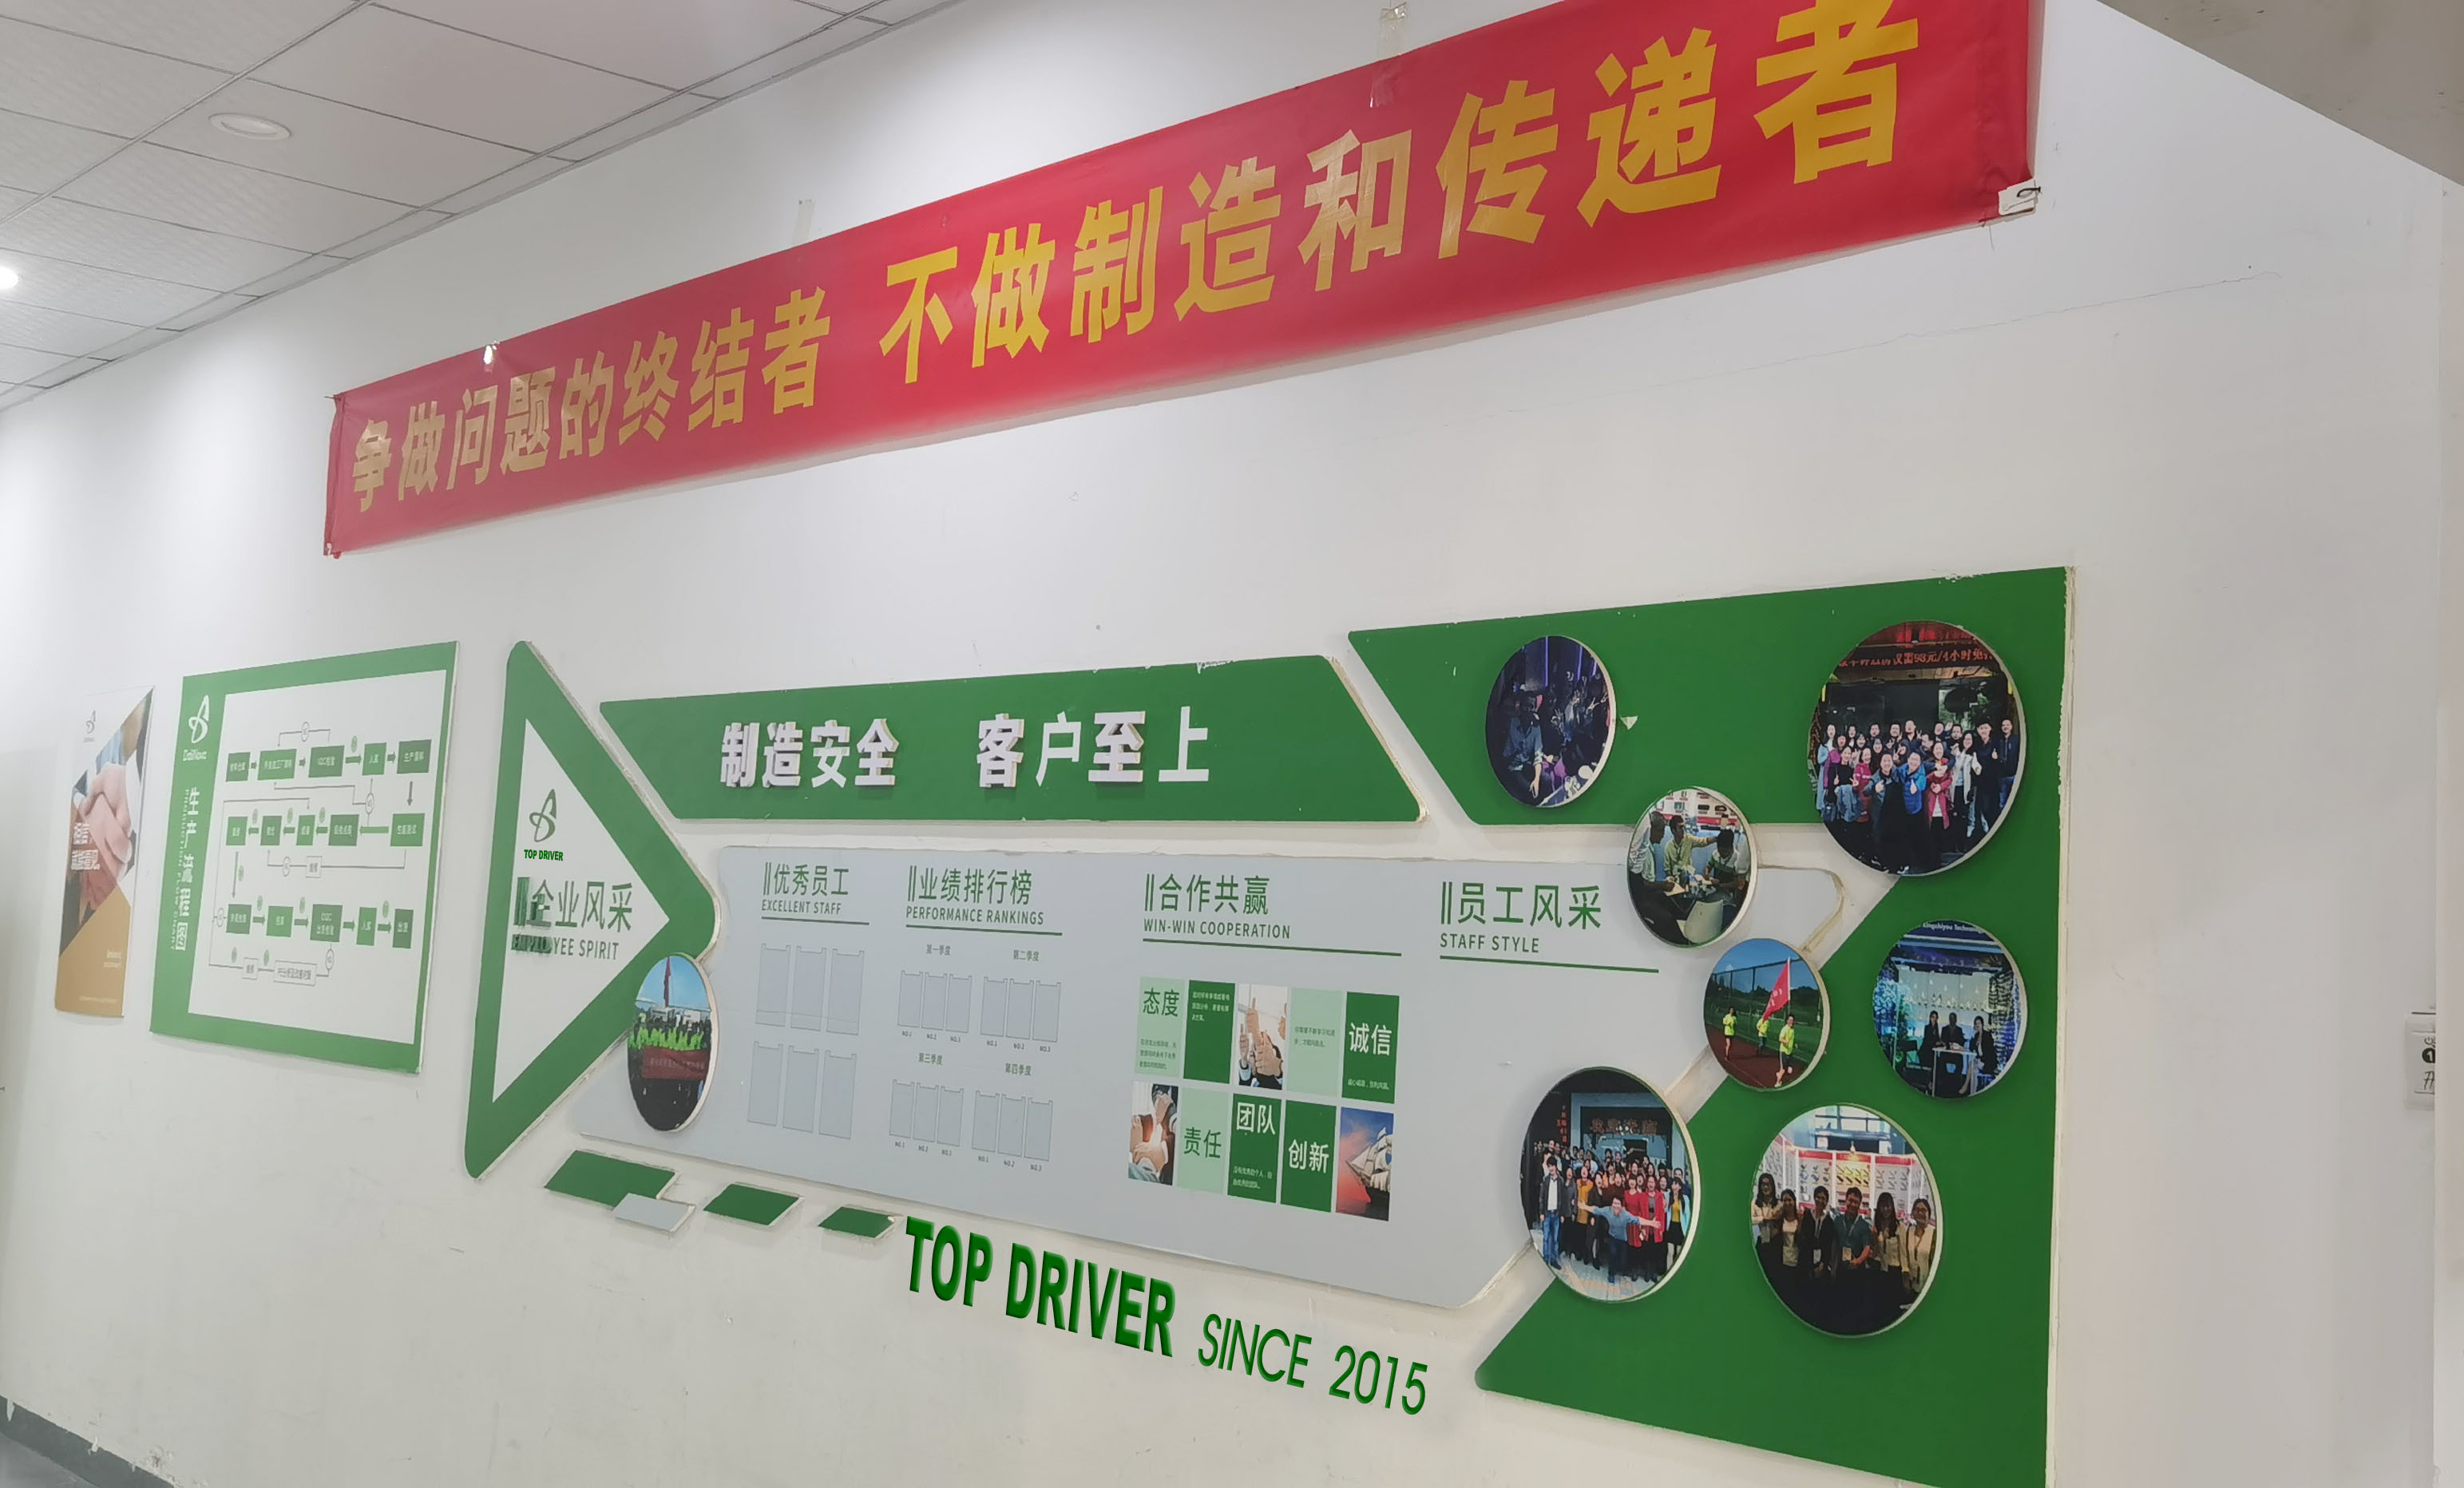 ประเทศจีน Top Driver Co,.Ltd รายละเอียด บริษัท